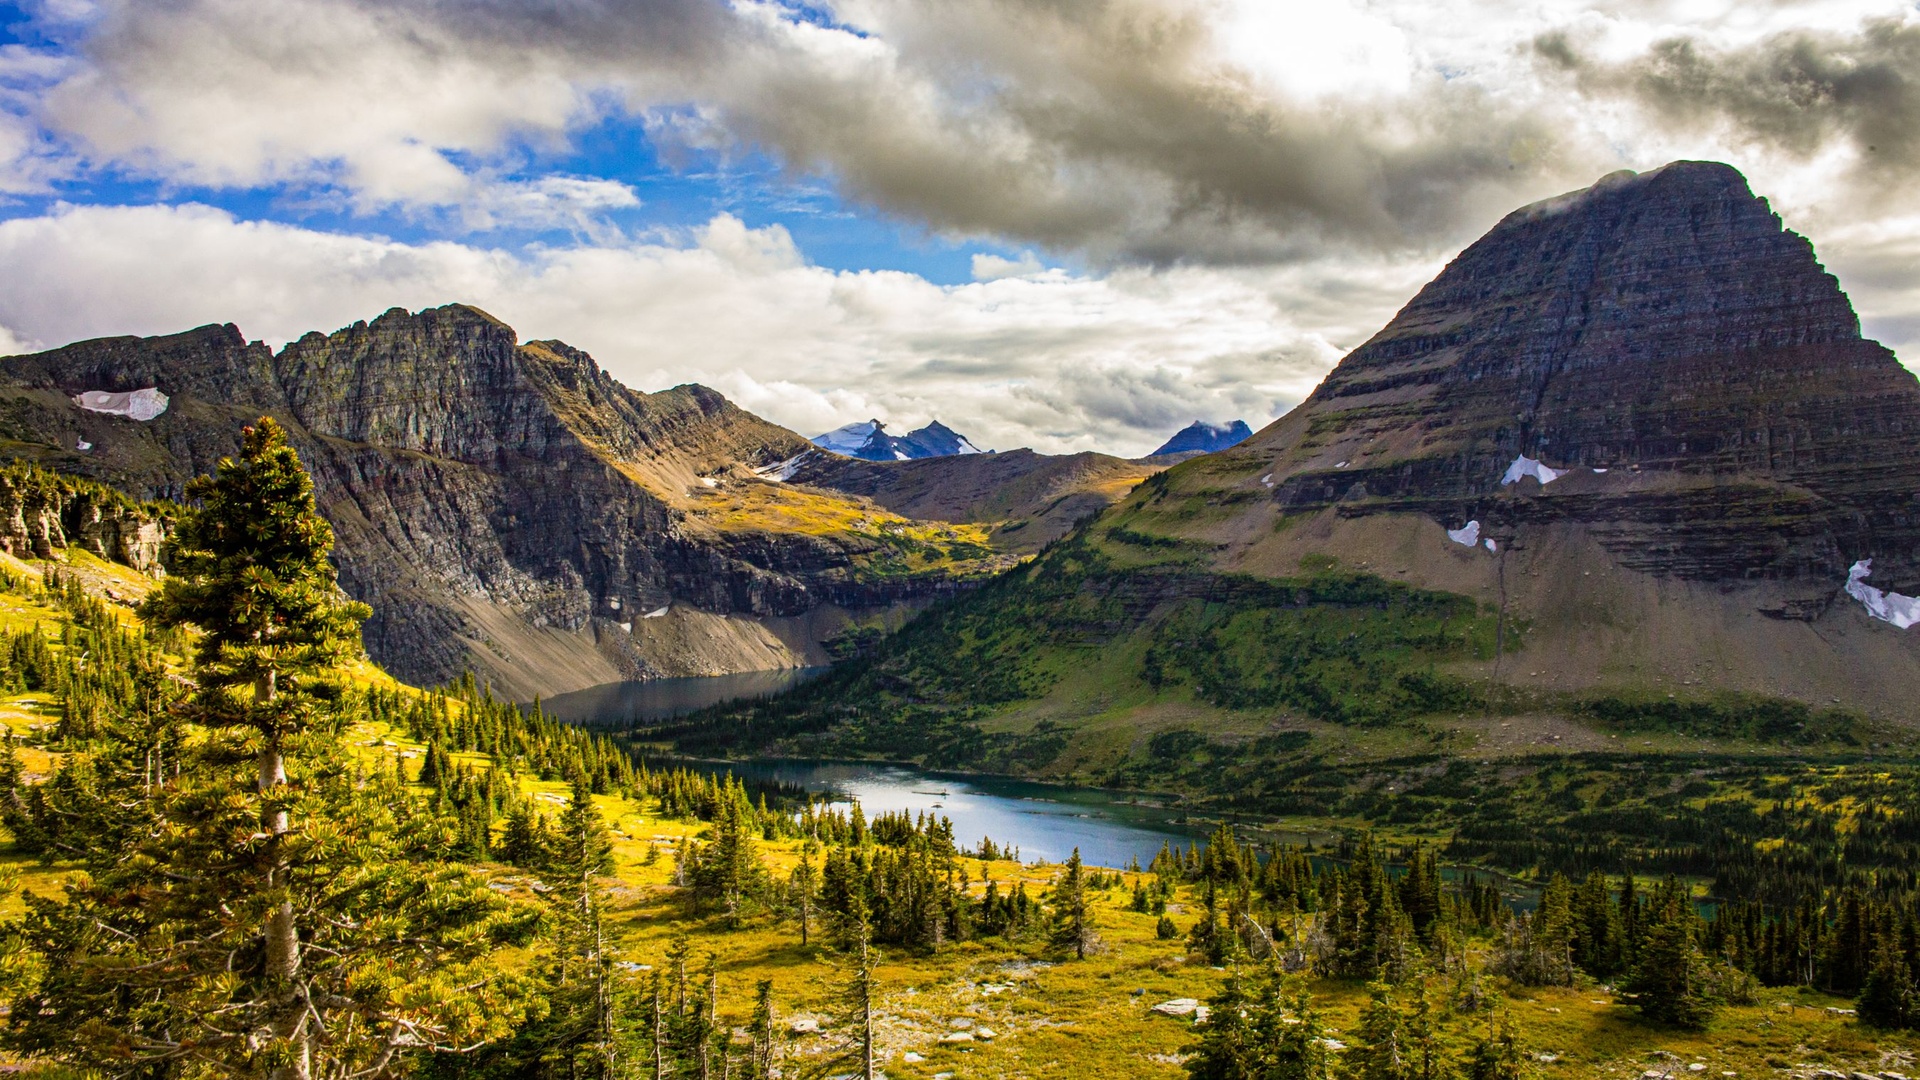 Cảnh sắc nơi vườn quốc gia gần biên giới Mỹ - Canada